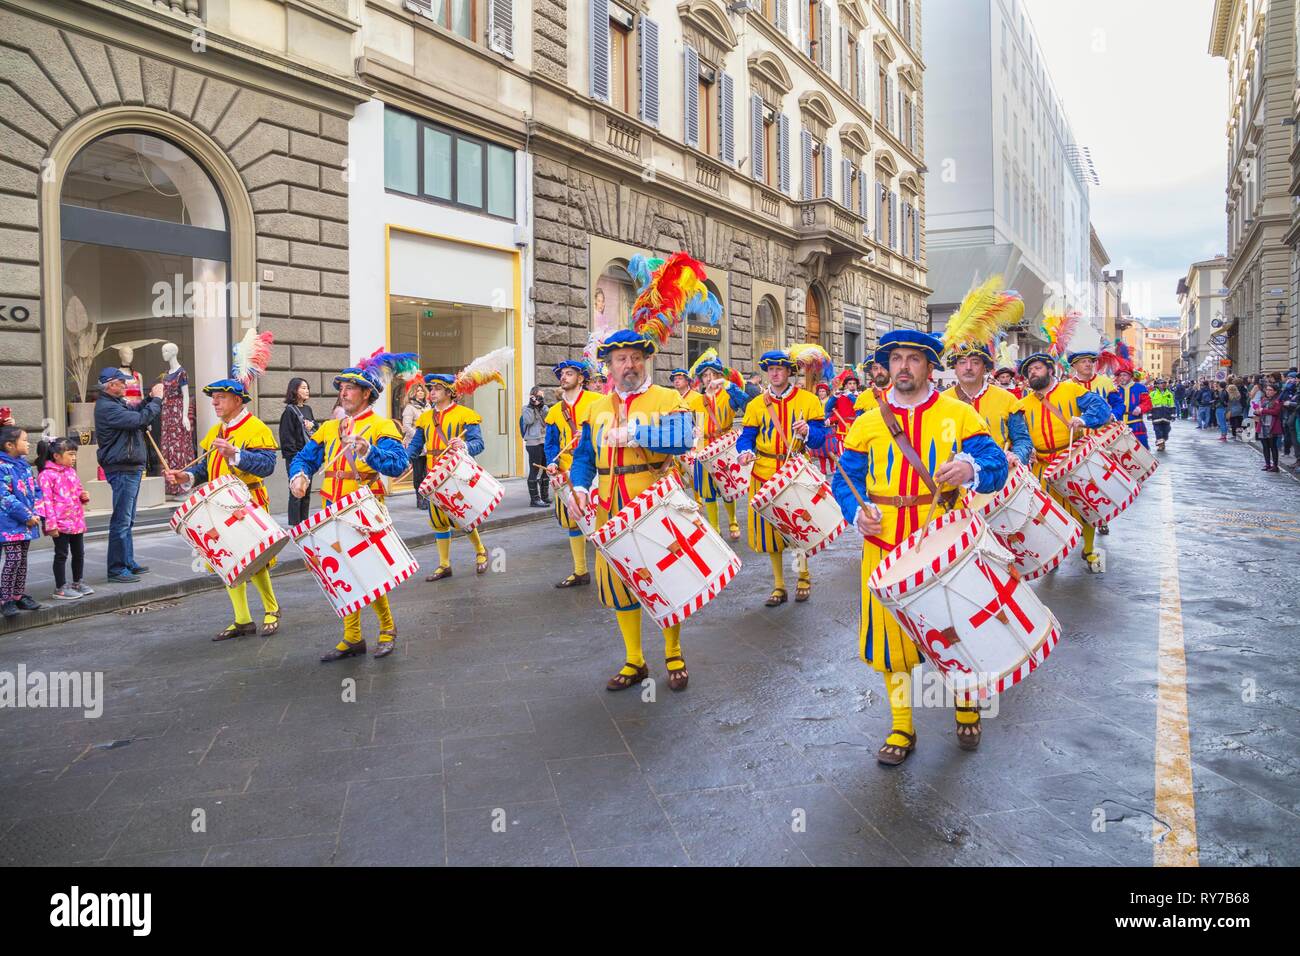 Schlagzeuger in historischen Kostümen marschieren durch Straße, scoppio Del Carro oder Explosion der Warenkorb Festival, Florenz, Toskana Stockfoto